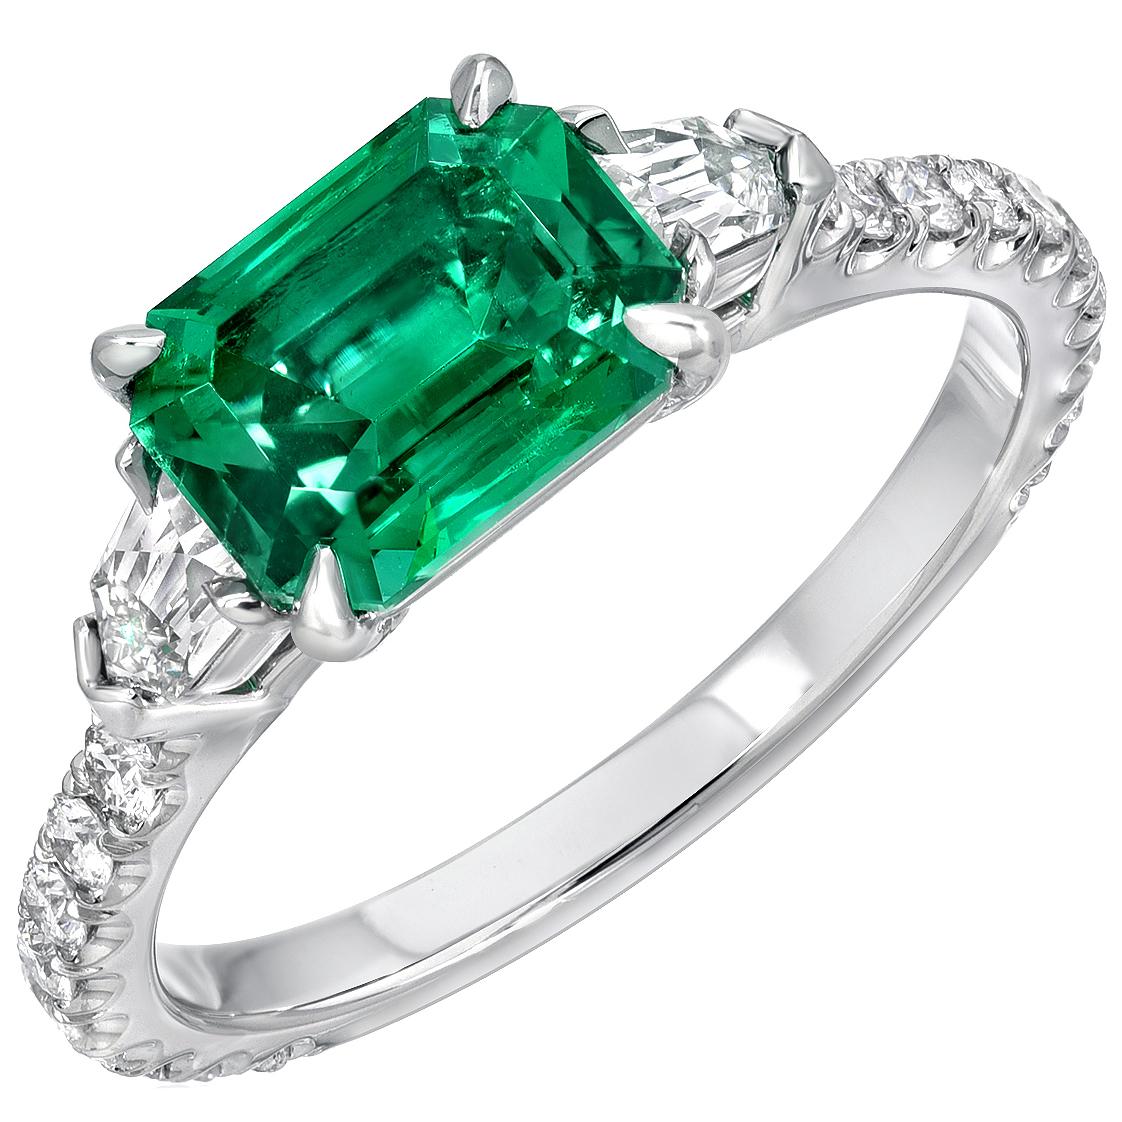 Excepcional anillo de platino con una Esmeralda talla esmeralda de 1,47 quilates, sin aceite, de calidad de colección, procedente de Panjshir, Afganistán. Esta Esmeralda está flanqueada por un par de diamantes en forma de bala de talla francesa,